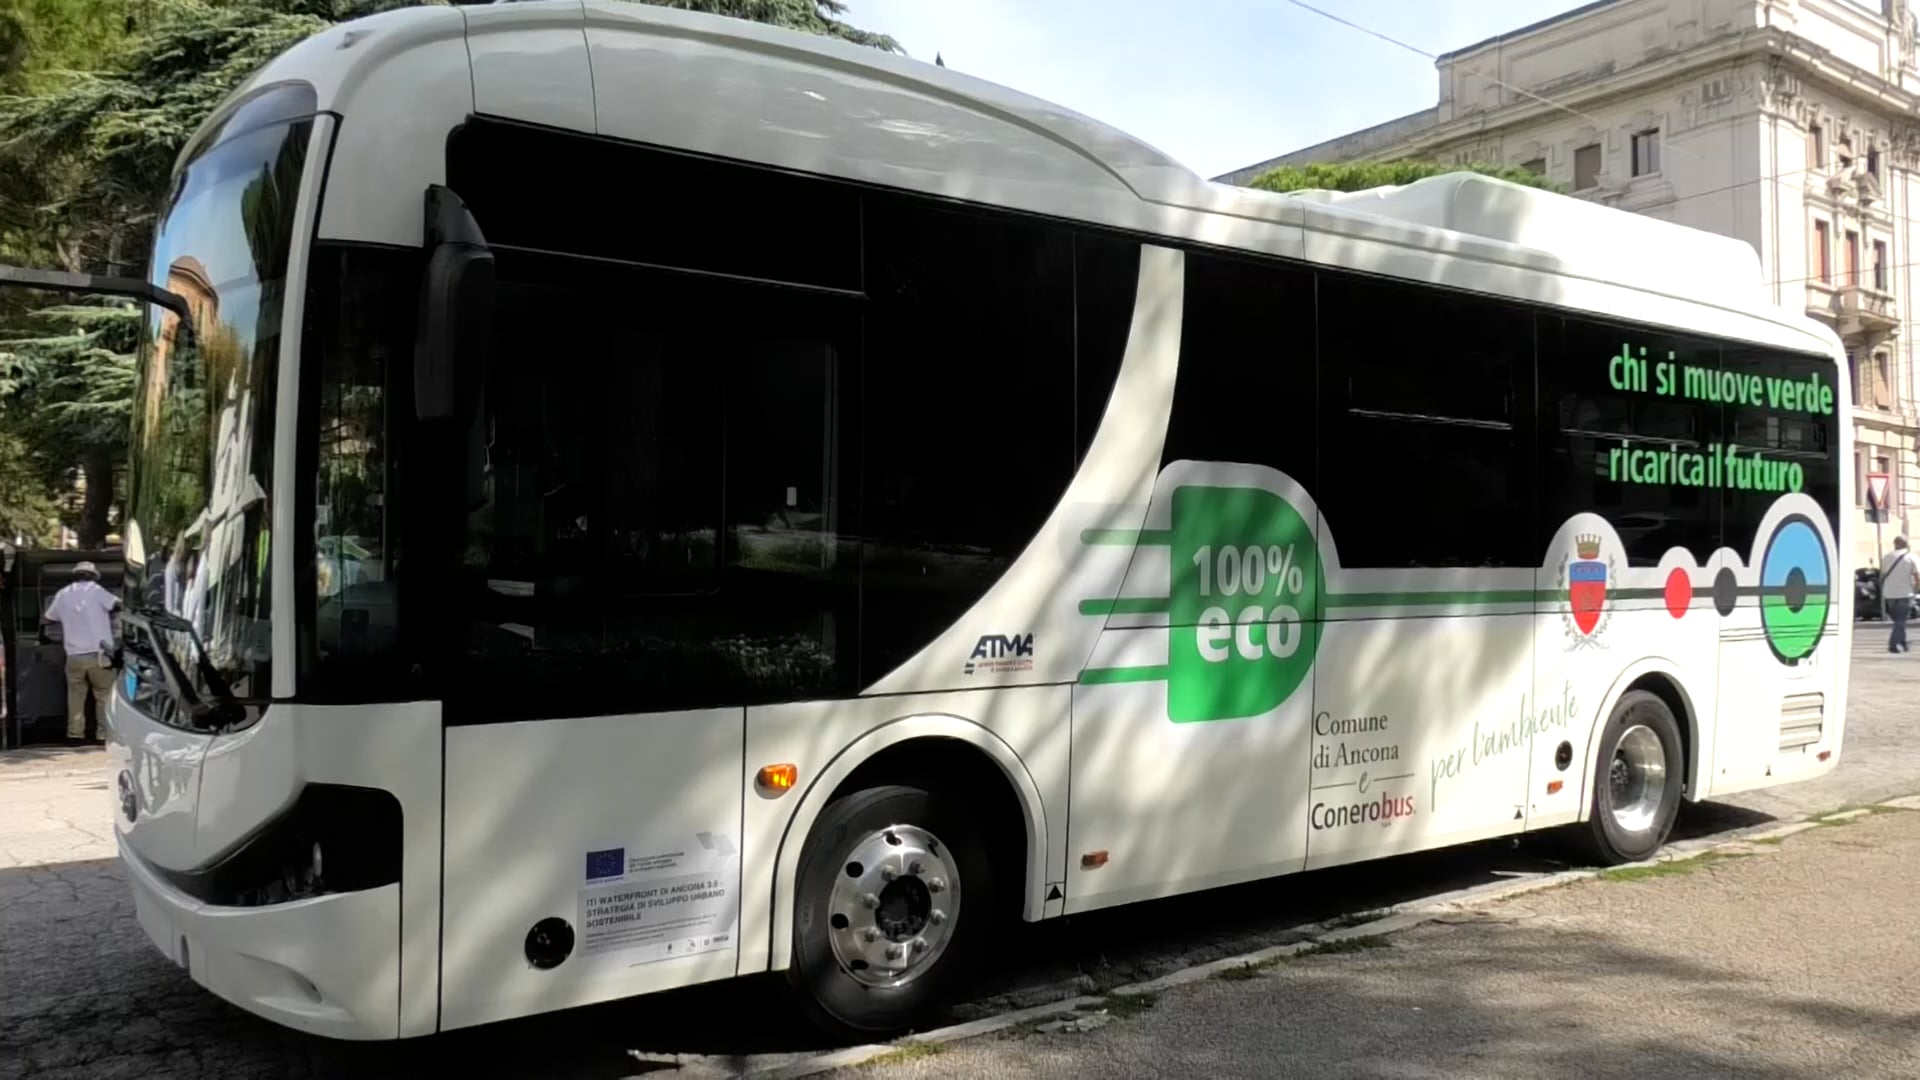 Conerobus più green con due nuovi bus elettrici